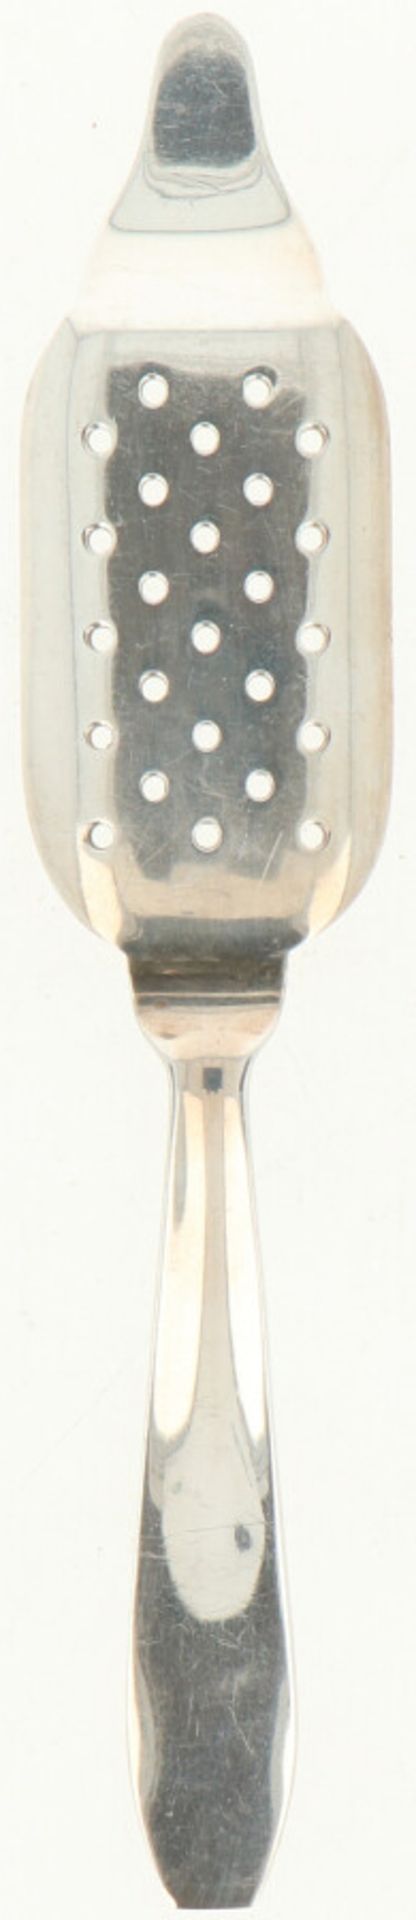 (2) Oesterschepjes. zilver.Strak uitgevoerd. België, 20e eeuw, Keurtekens: A835, ZII, onbekend - Bild 2 aus 3